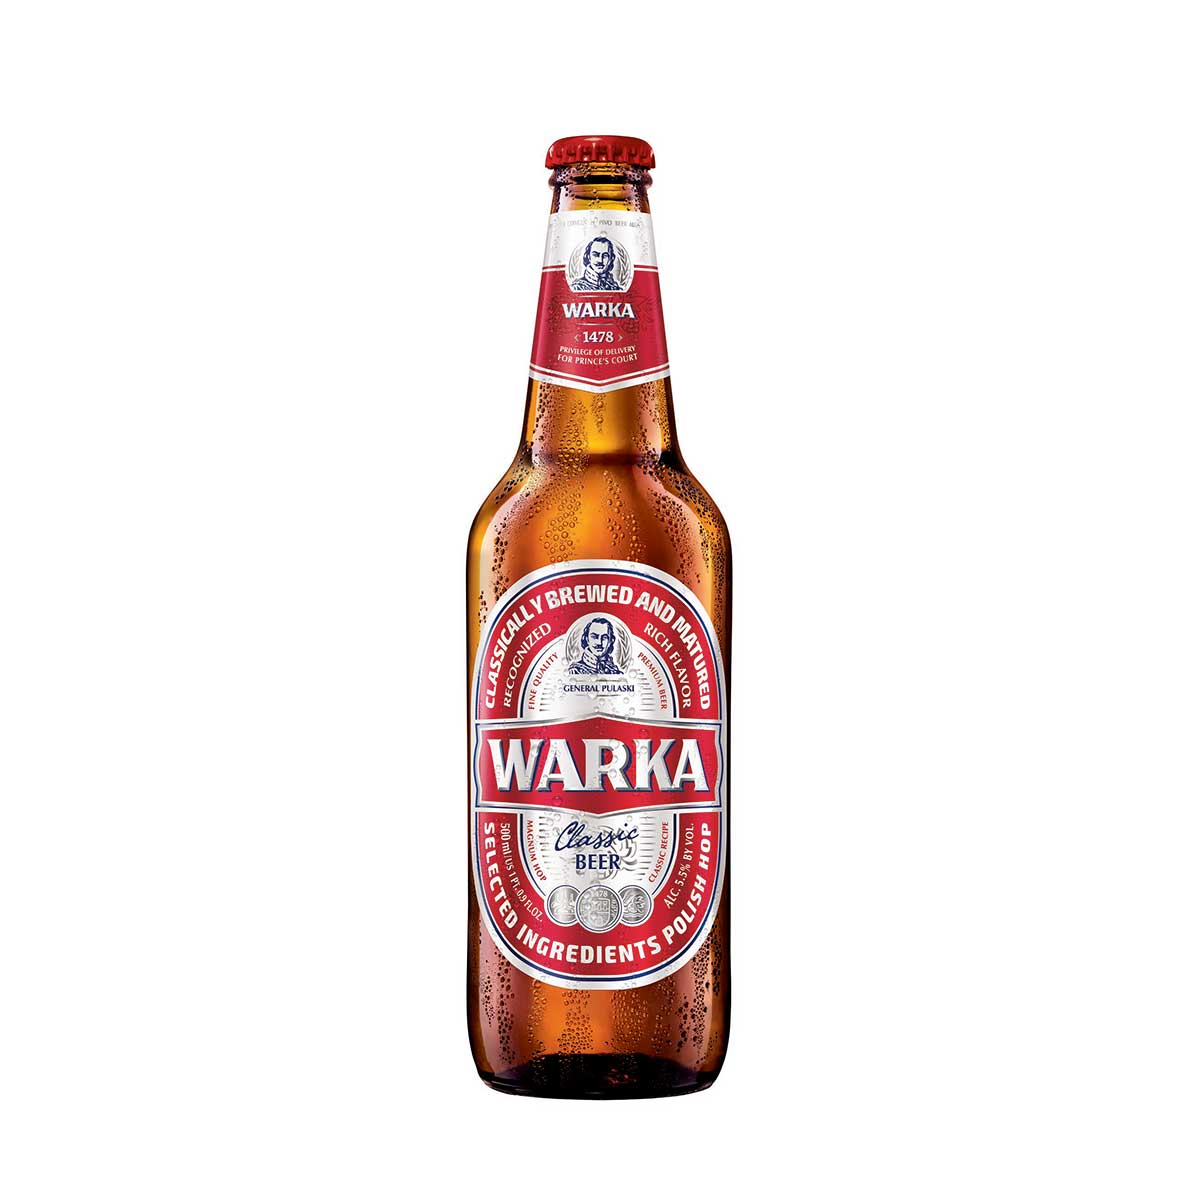 http://beerimporters.us/wp-content/uploads/2017/05/warka1.jpg